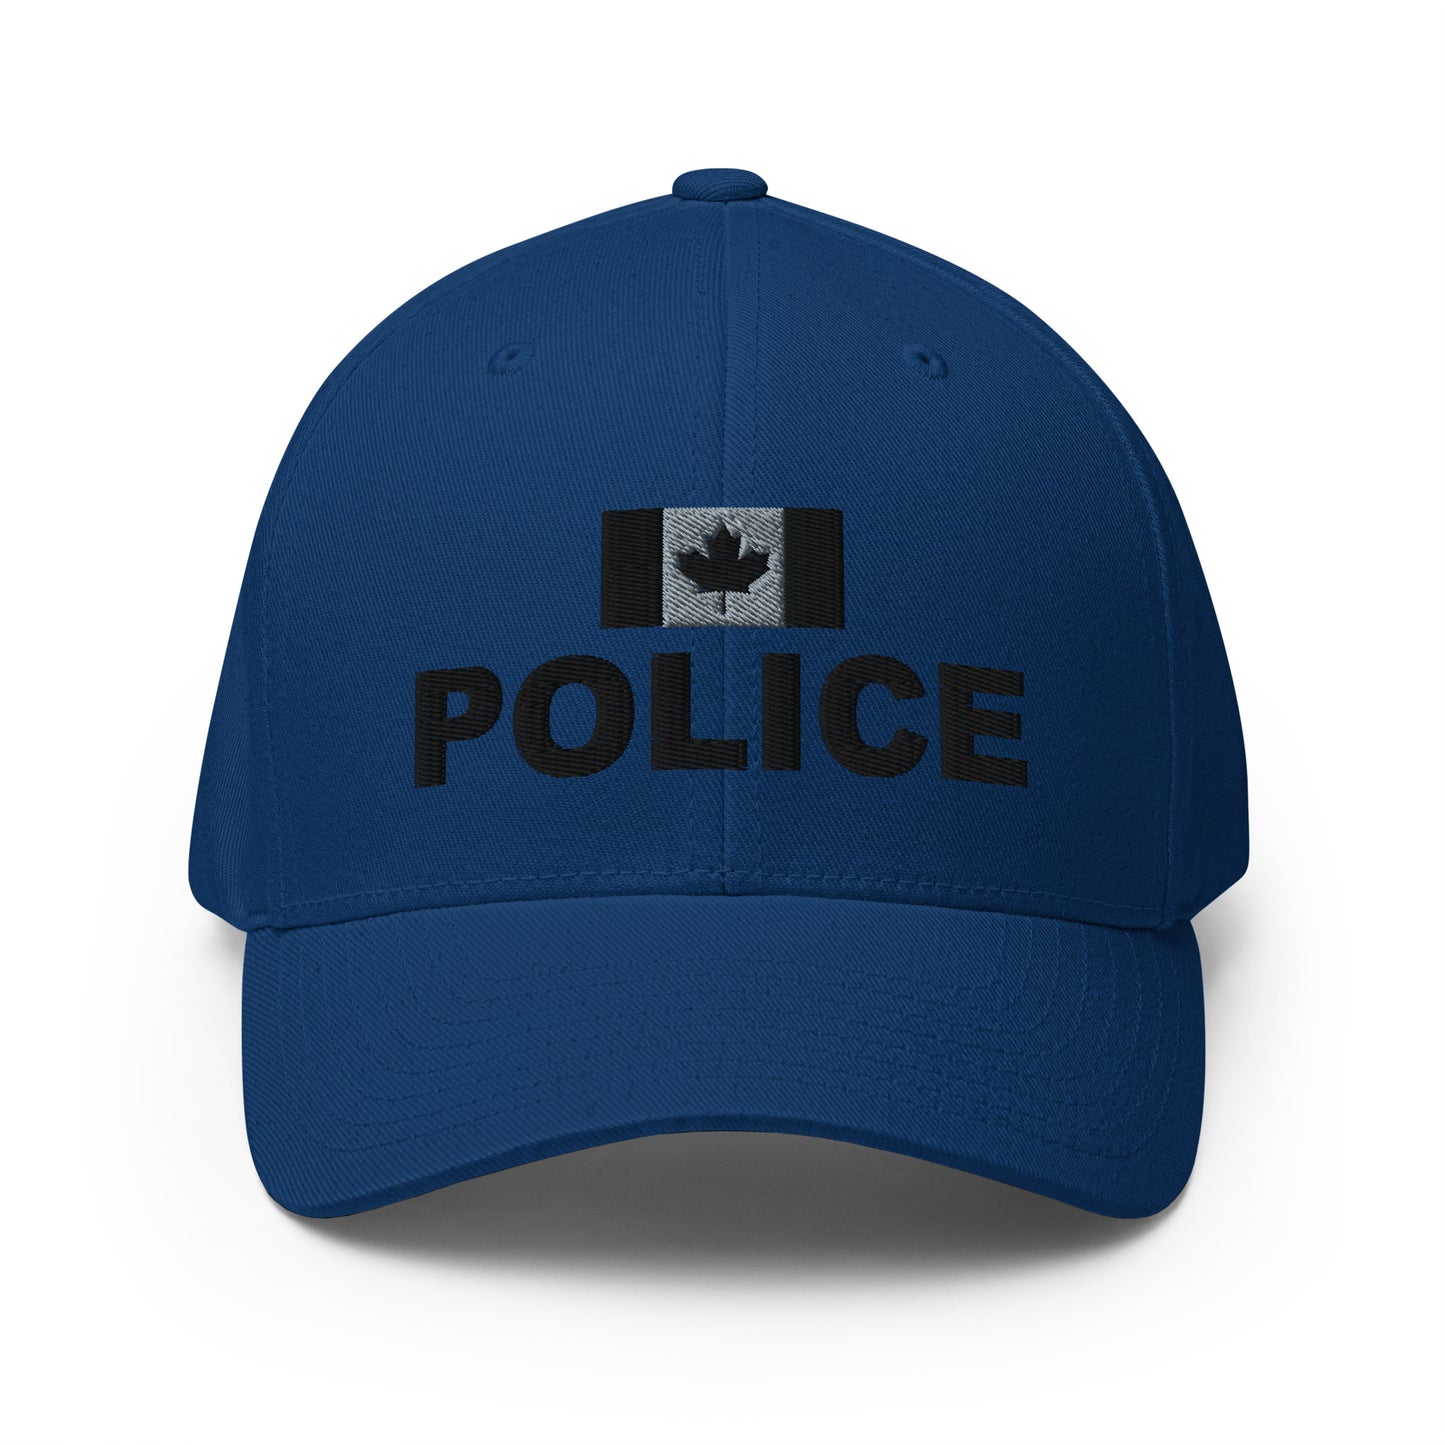 Canadian Police Subdued Flexfit Hat-911 Duty Gear Canada-911 Duty Gear Canada